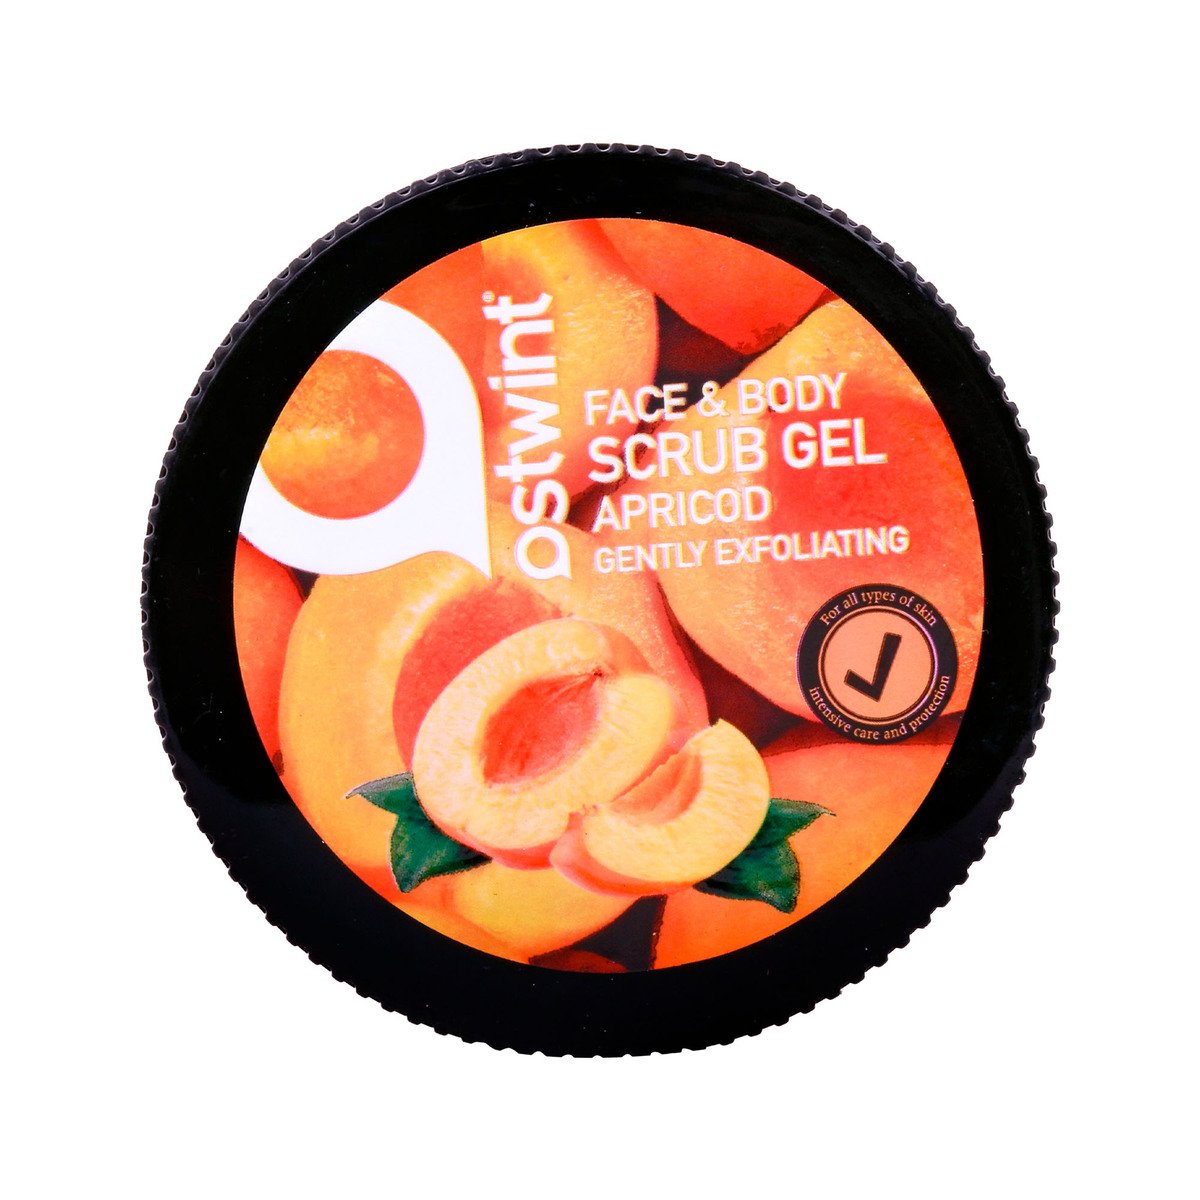 Ostwint Face & Body Scrub Gel Apricot 300ml